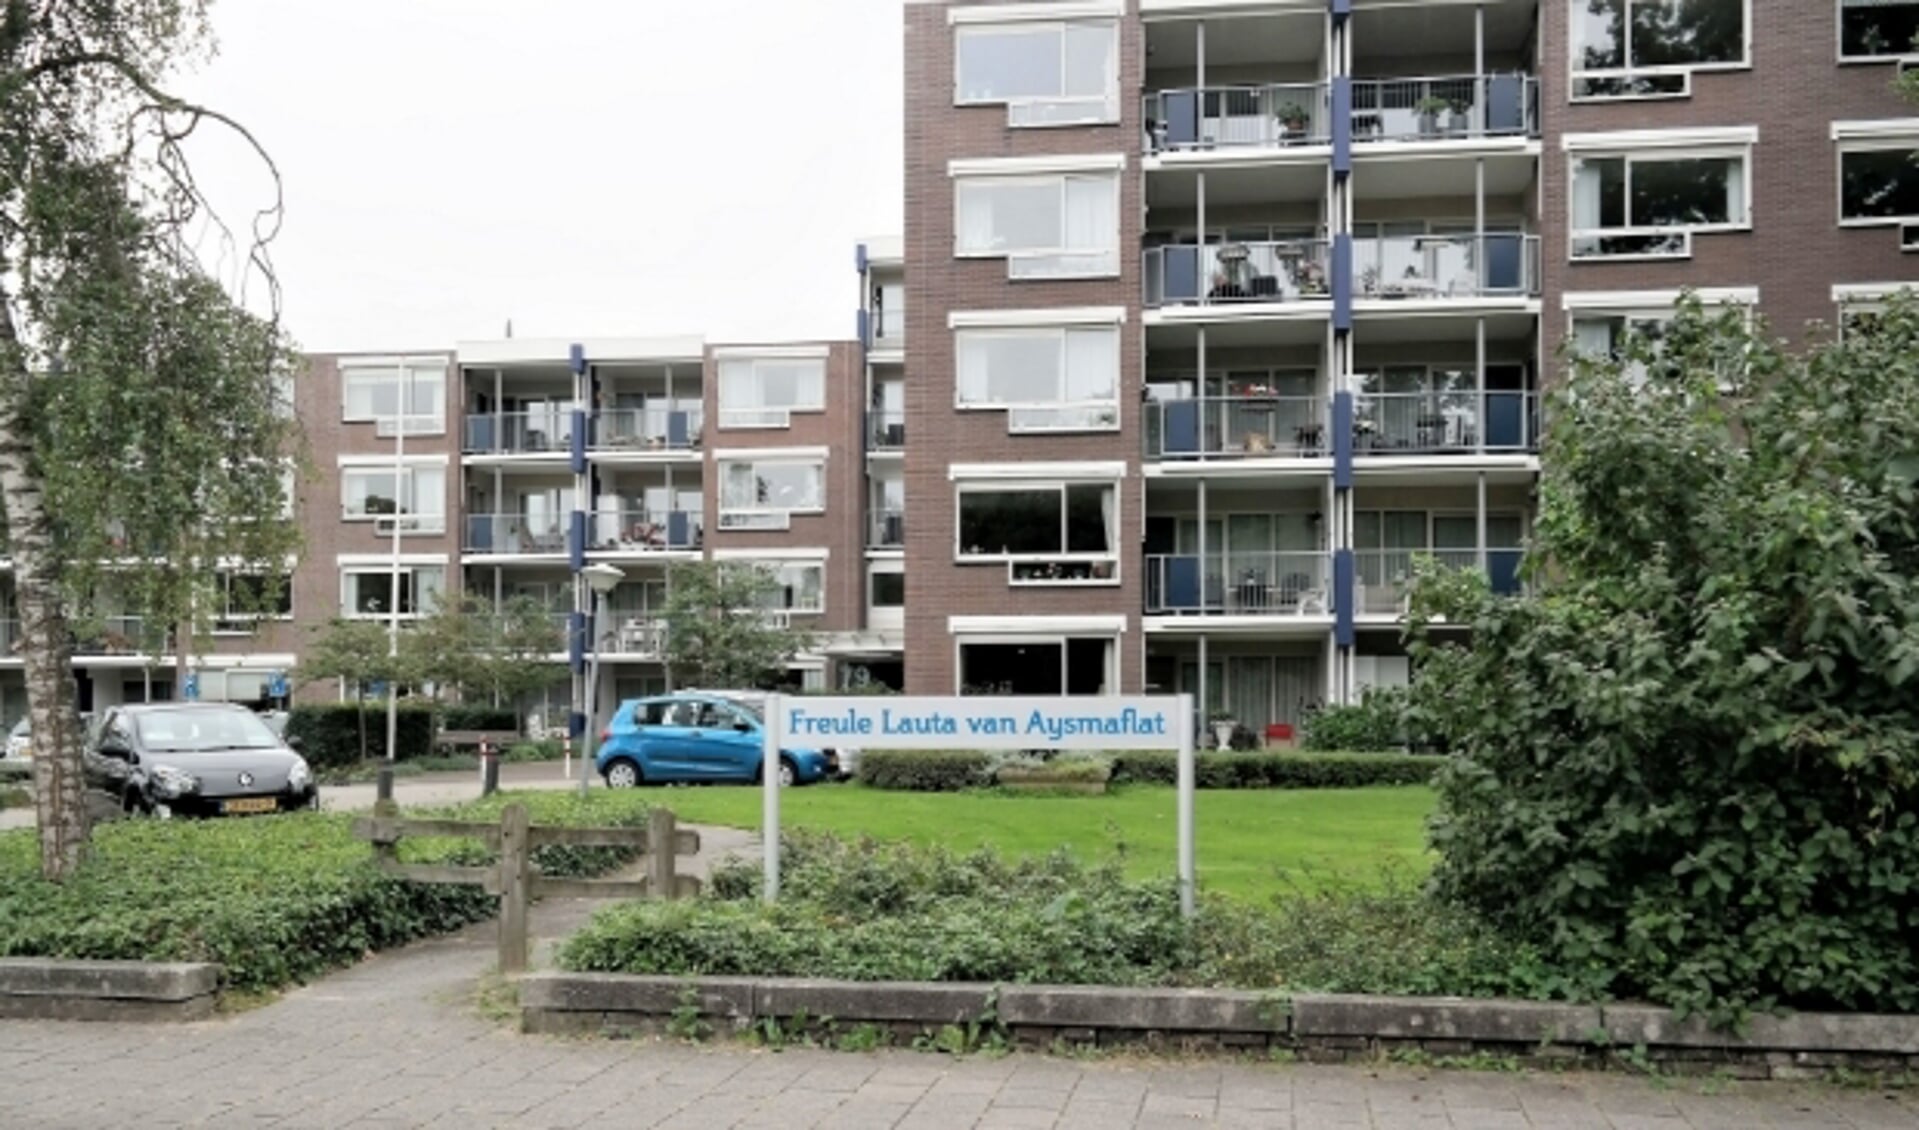 De Freule Lauta van Aysma-flat aan de Kerkewijk waarvan de stichting investeerde in een dubieus project. (Archieffoto 2017, Aart Aalbers)